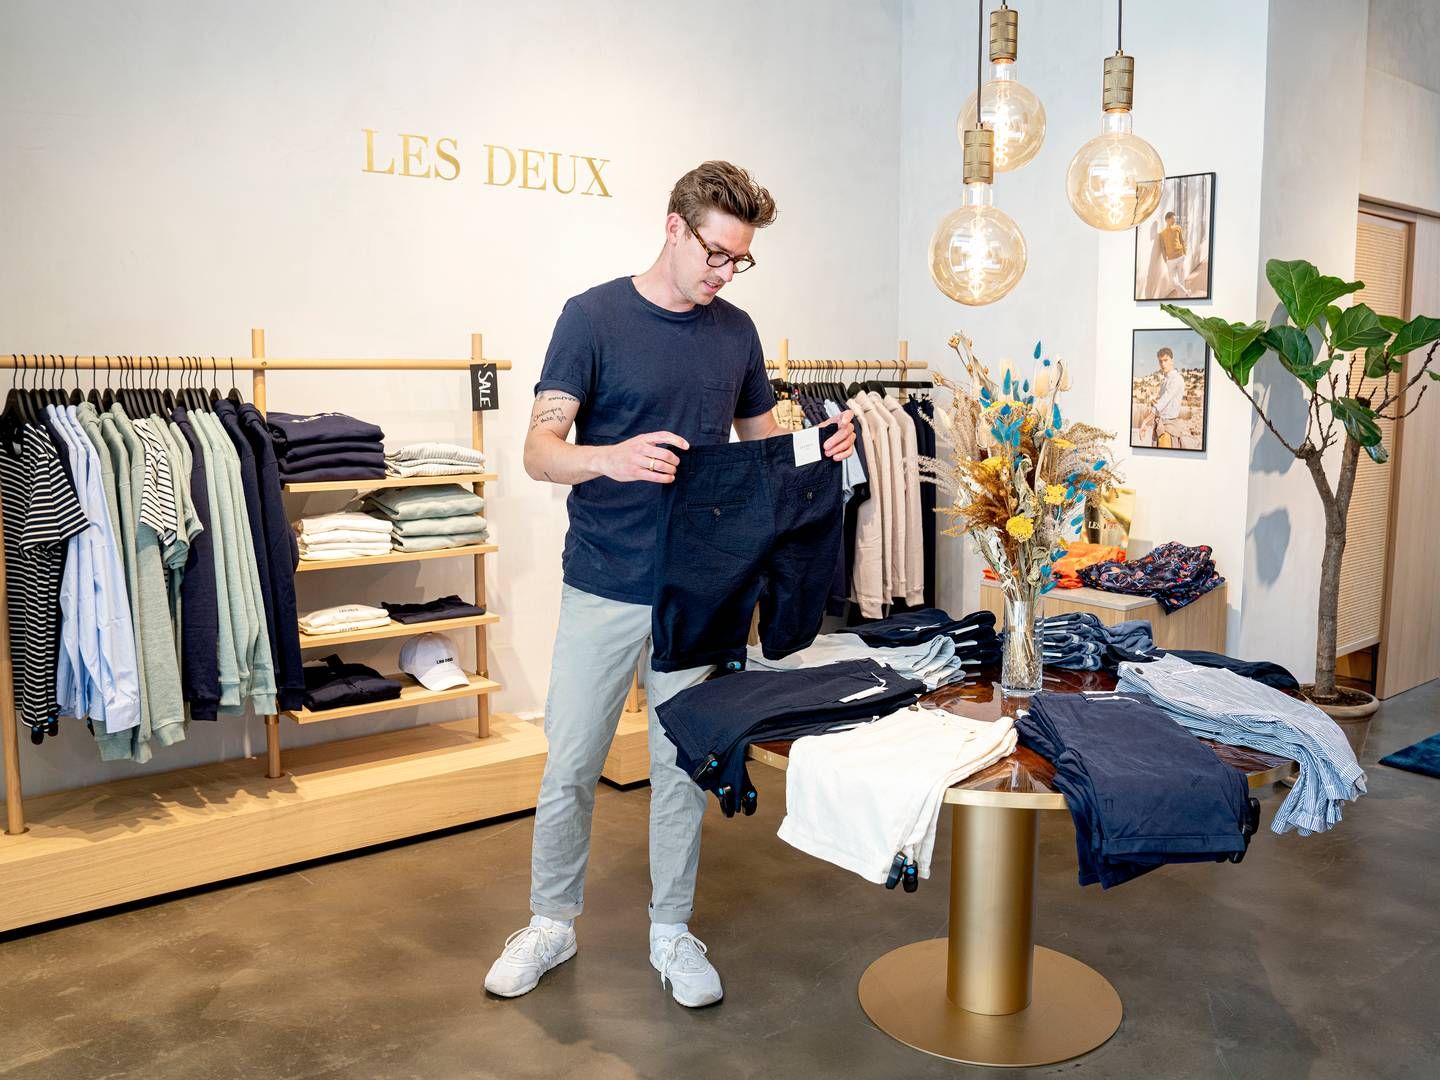 Andreas von der Heide er en af de to stiftere, som i 2021 solgte aktiemajoriteten i modevirksomheden Les Deux til det svenske investeringsselskab Röko. Ifølge DetailWatch betalte Röko et trecifret millionbeløb for en ejerandel på omkring 60 pct. | Foto: Stine Bidstrup